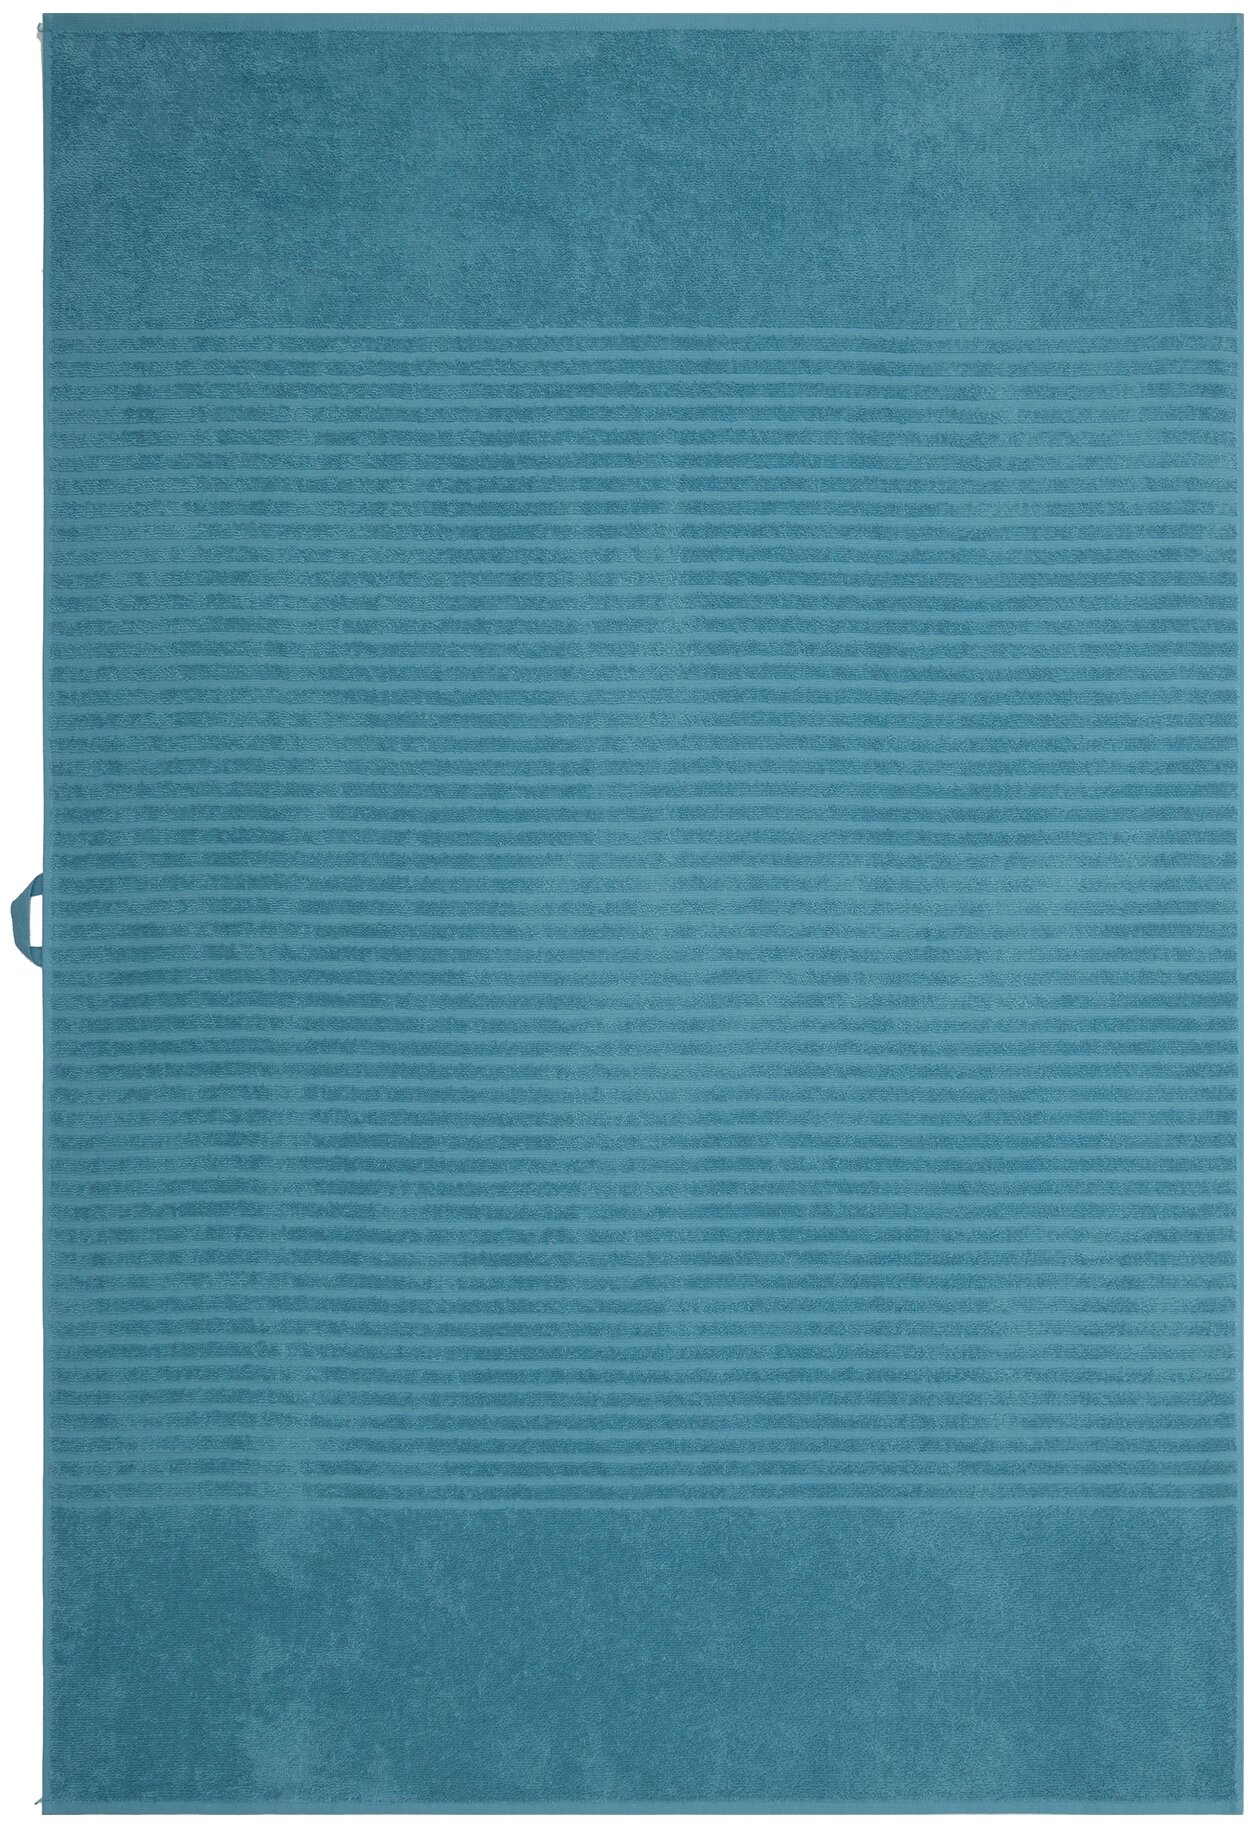 Полотенце банное,пляжное махровое, Донецкая мануфактура, 100х150 см., цвет: серо-голубой, 100% хлопок - фотография № 9